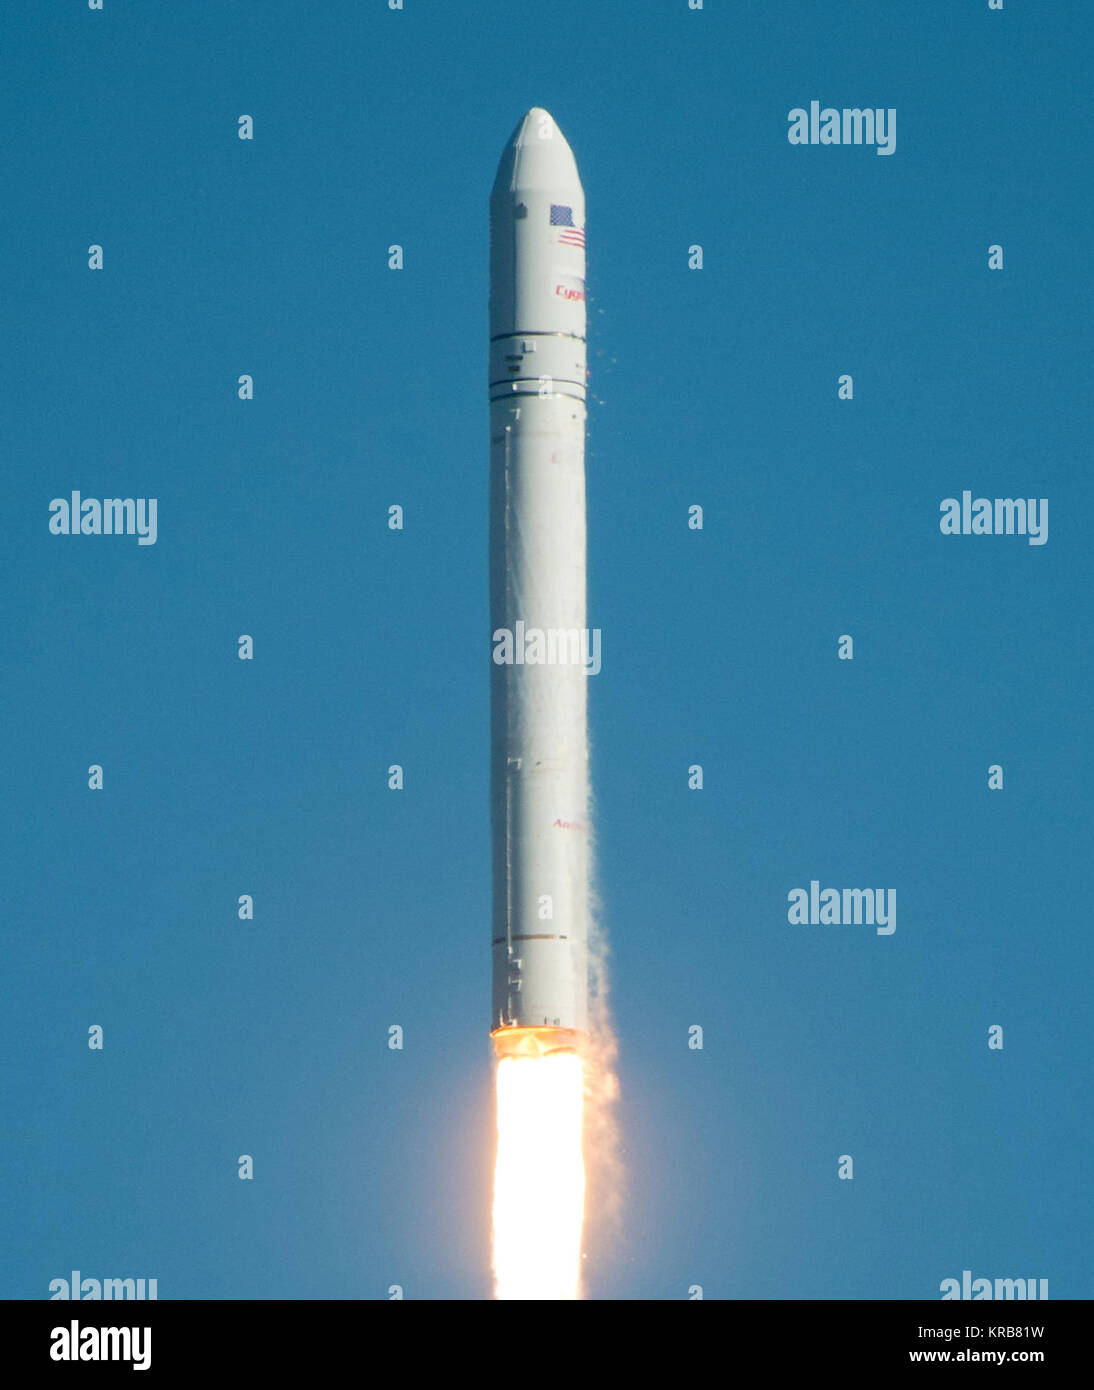 La Orbital Sciences Corporation Antares cohete es visto como lanza desde Pad-0A del Mid-Atlantic Regional Spaceport (MARS) en las Instalaciones de Vuelo Wallops de la NASA en Virginia, el domingo, 21 de abril de 2013. El lanzamiento de prueba marcó el primer vuelo de Antares y el primer lanzamiento del cohete de Pad-0A. El Antares rocket entregó la masa equivalente de una nave espacial, un llamado masivo de carga simulada, en la órbita de la tierra. Crédito de la foto: (NASA/Bill Ingalls) Antares A-ONE launch.2 Foto de stock